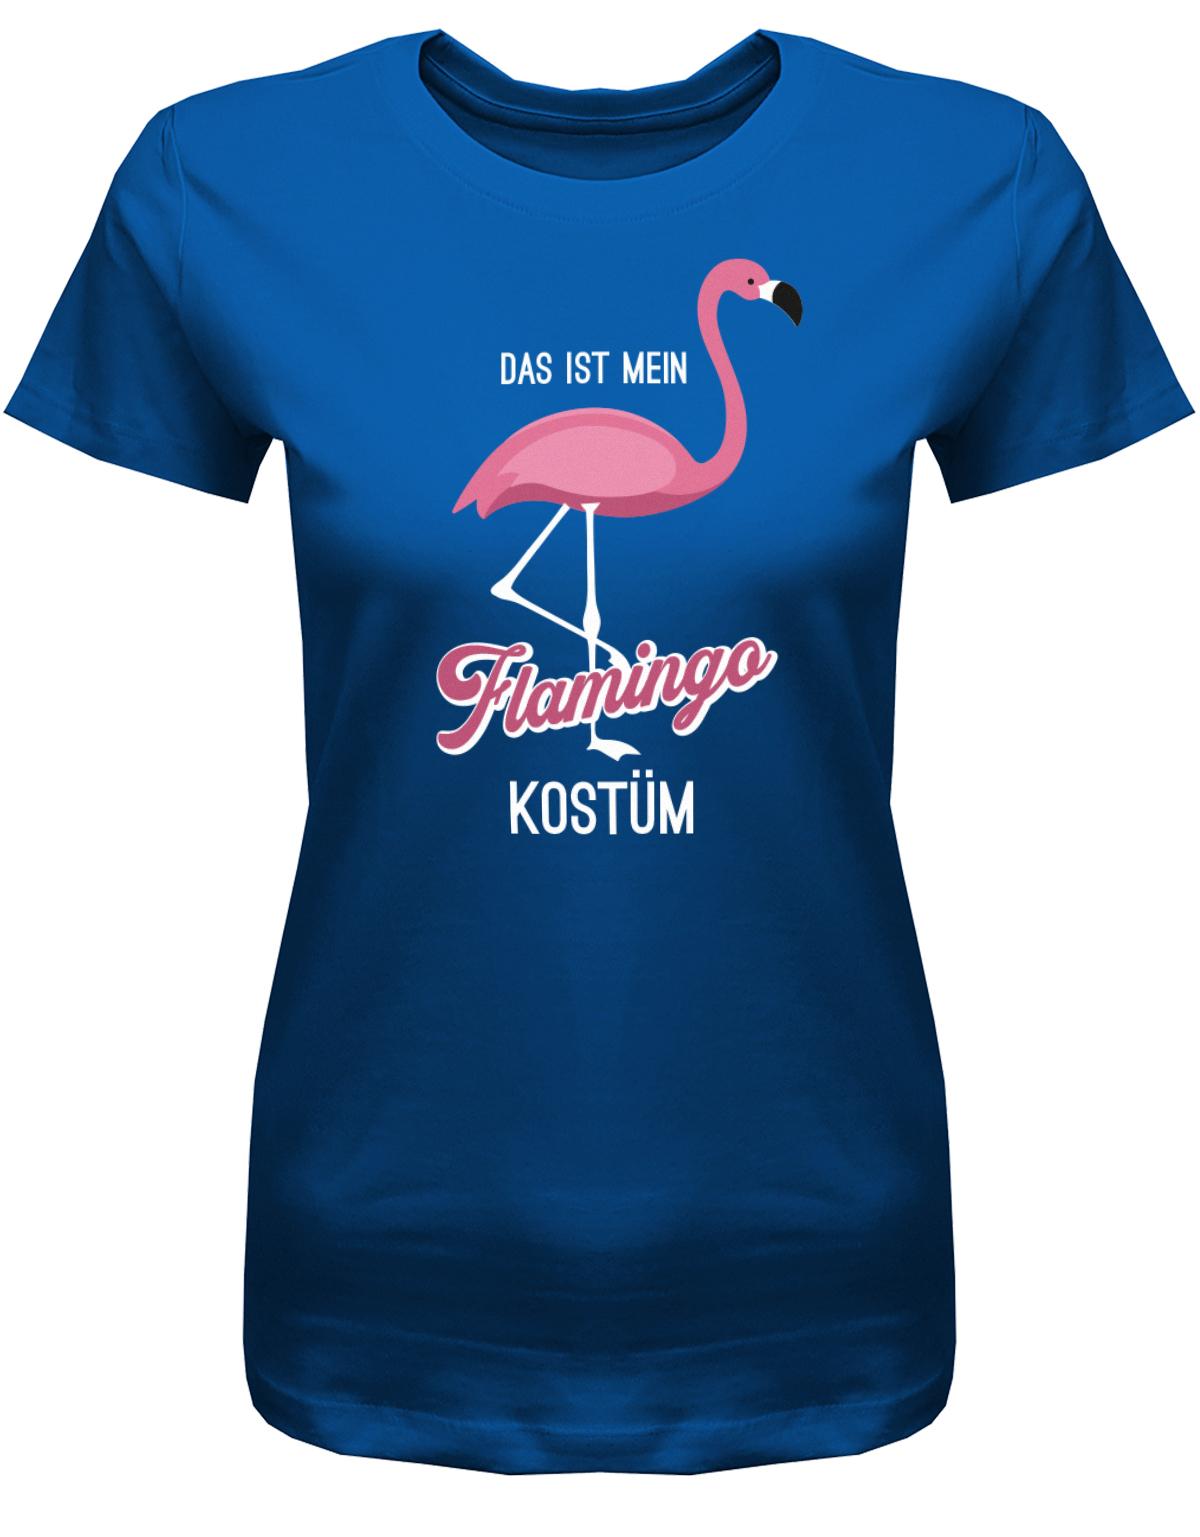 Das-ist-mein-Flamingo-Kost-m-Fasching-Karneval-Verkleidung-Shirt-Damen-Royalblau